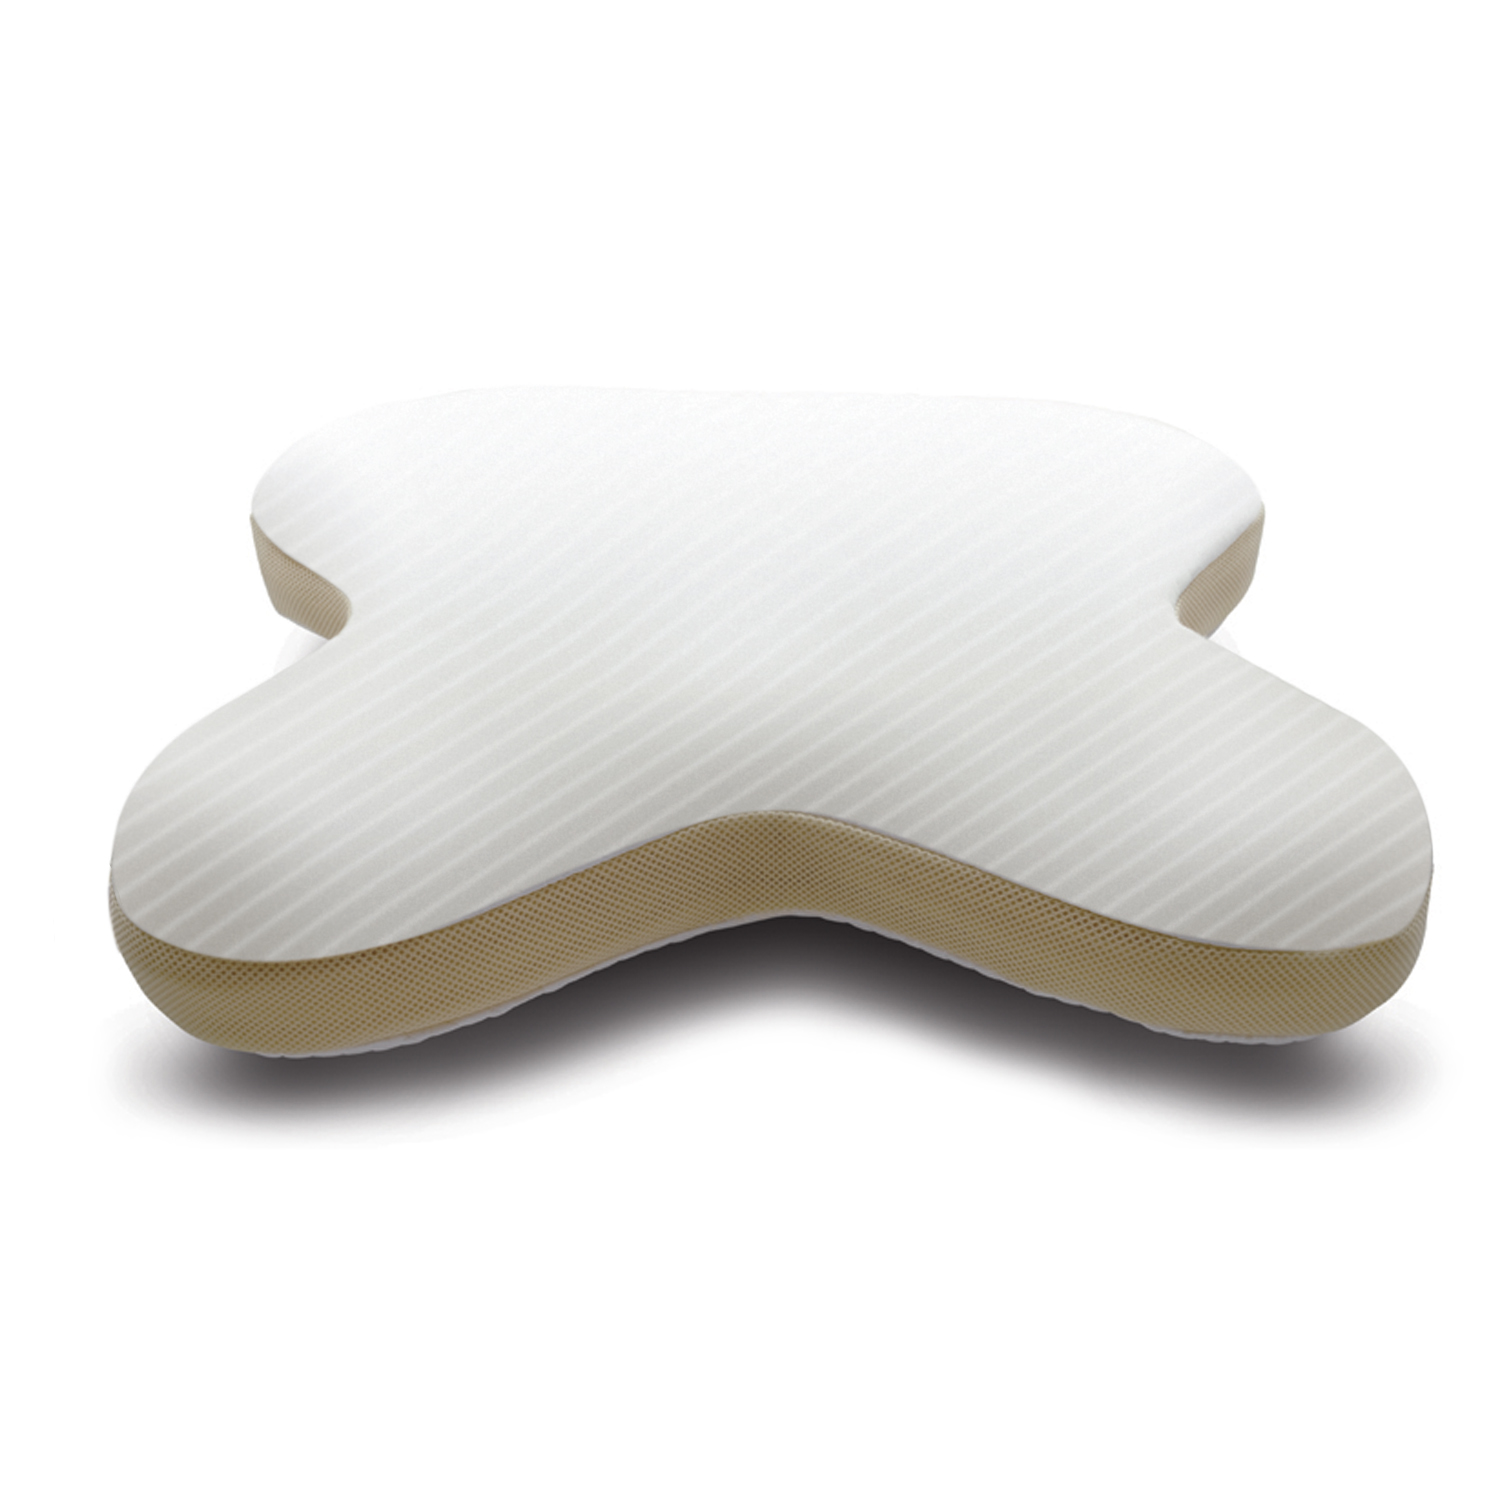 Ортопедическая подушка для сна купить в москве. Подушка Темпур Омбрасио. Подушка анатомическая Tempur Ombracio. Ортопедическая подушка Tempur. Подушка ортопедическая Lumf-516.